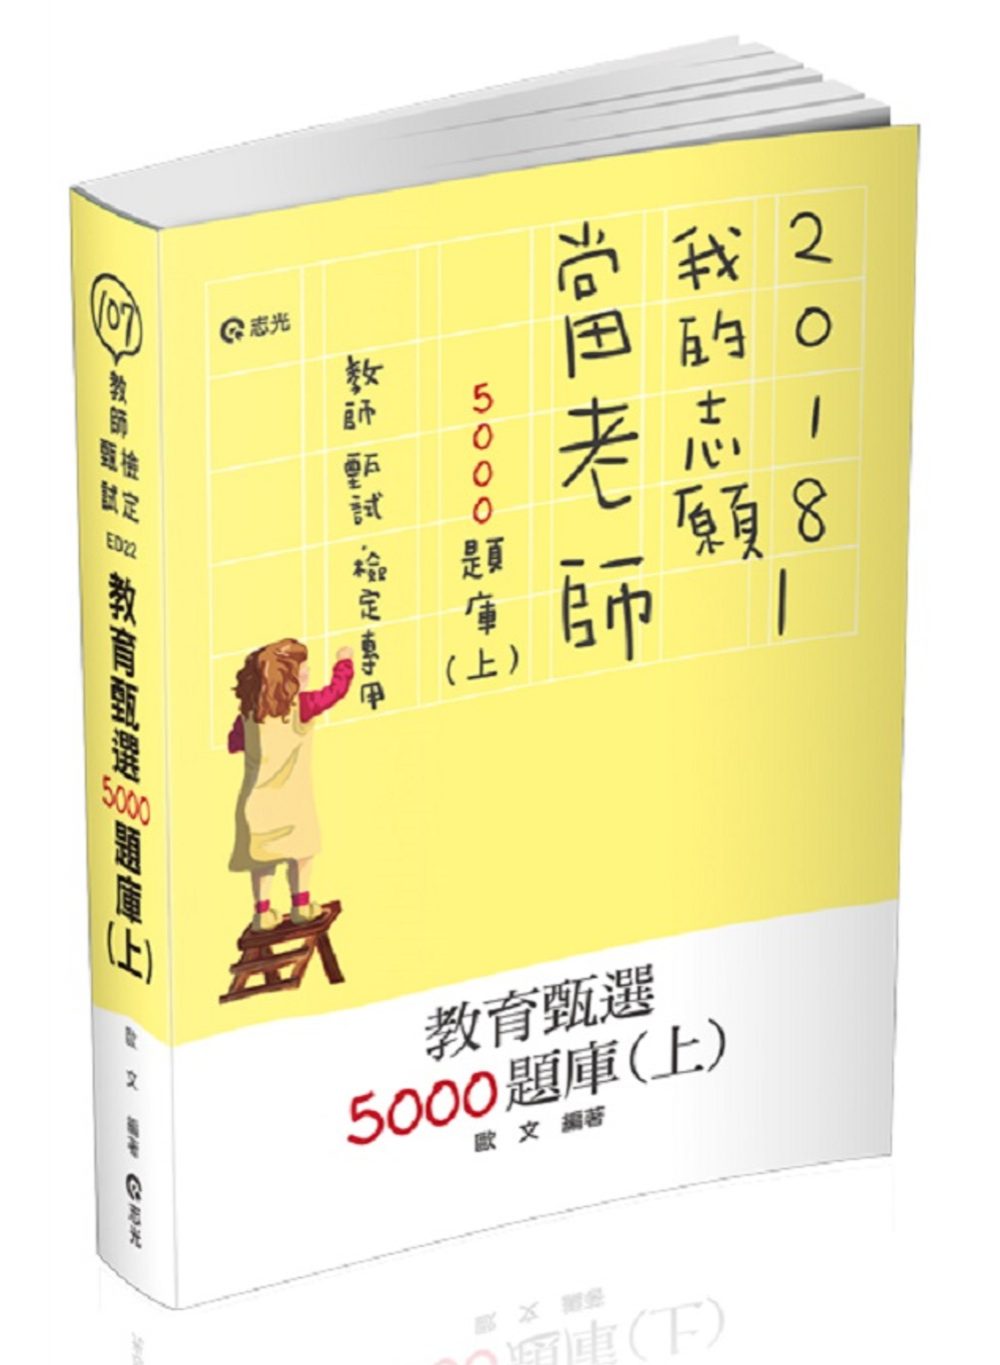 教育甄選5000題庫(上)(教師甄試、教師檢定考試適用)